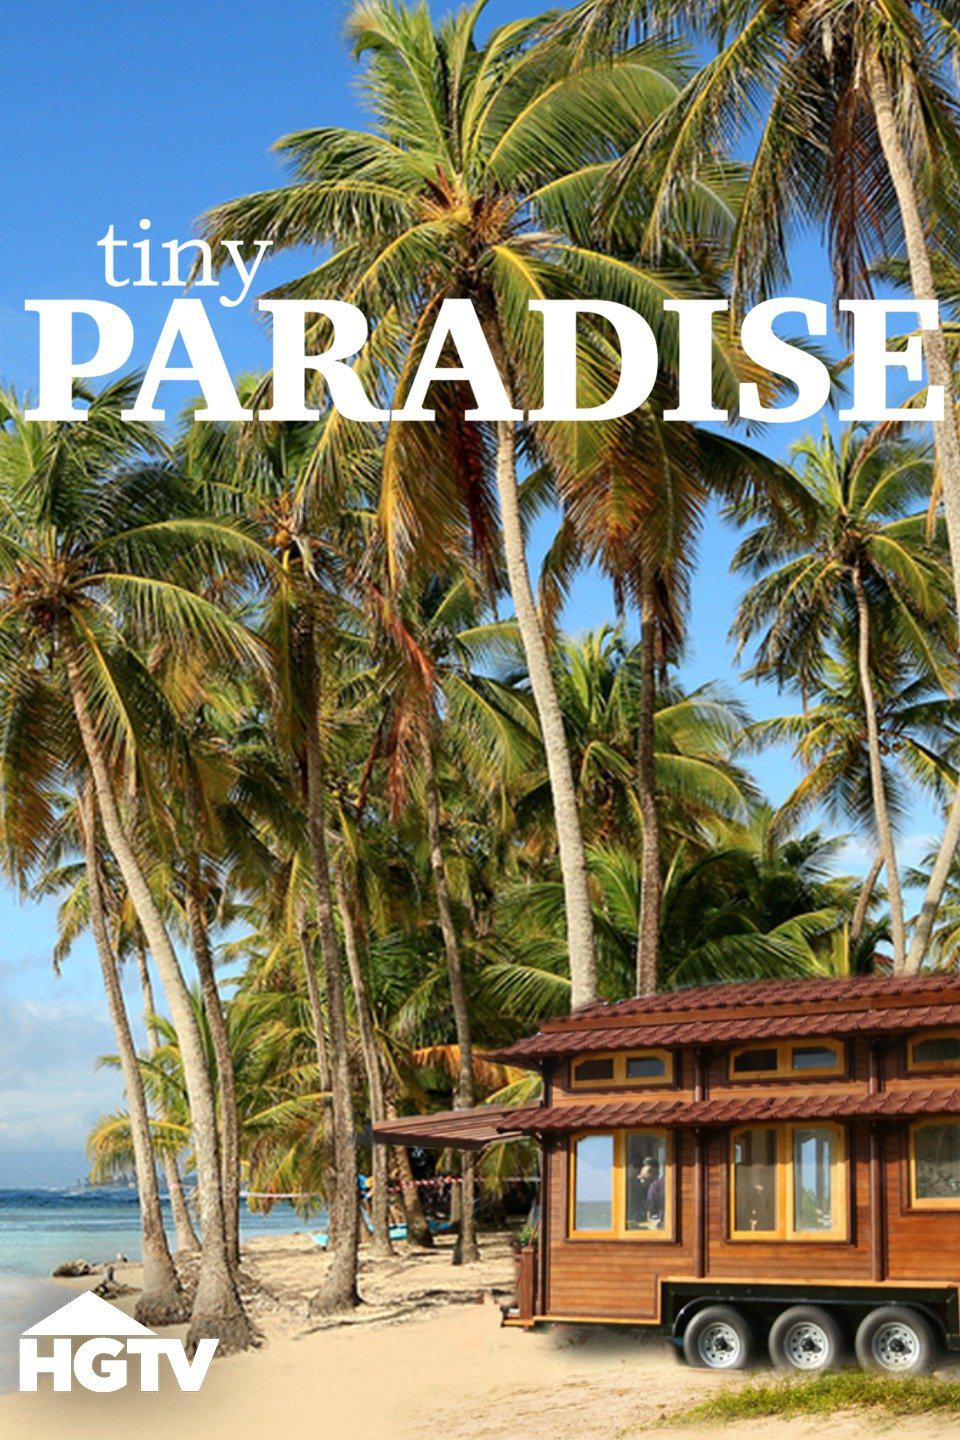 TV ratings for Tiny Paradise in Brazil. hgtv TV series